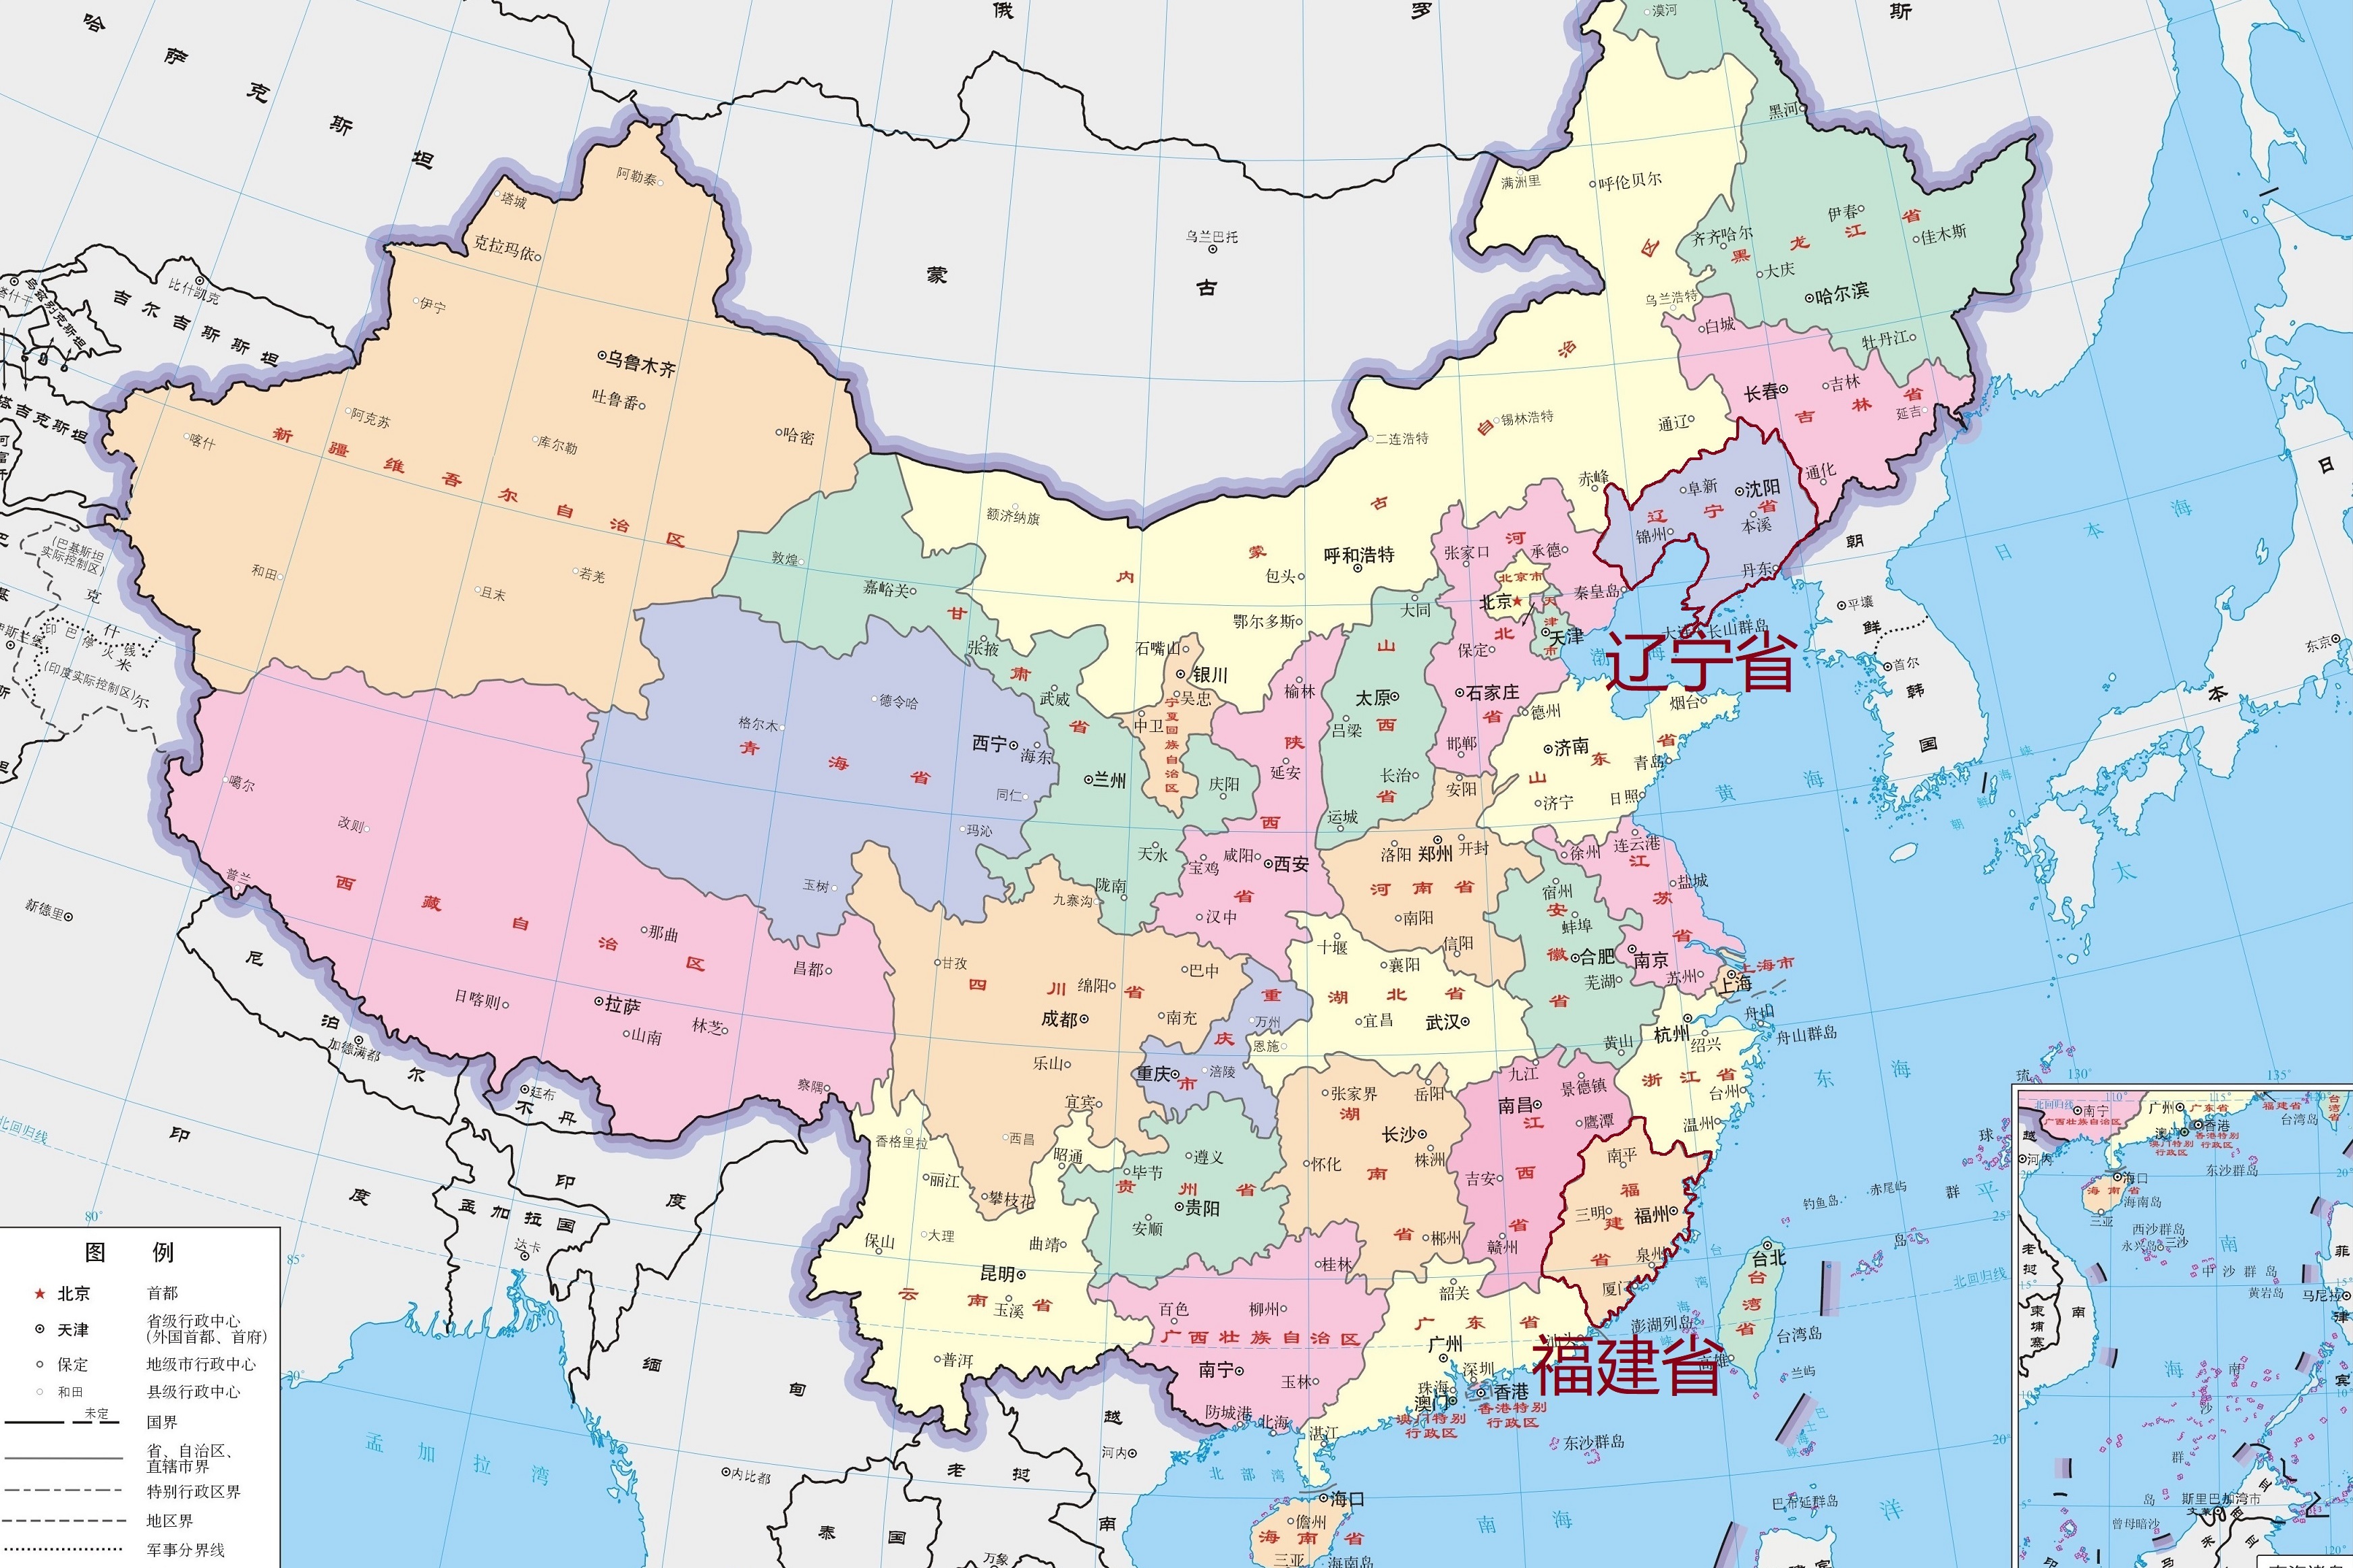 中国省份地图 简洁图片